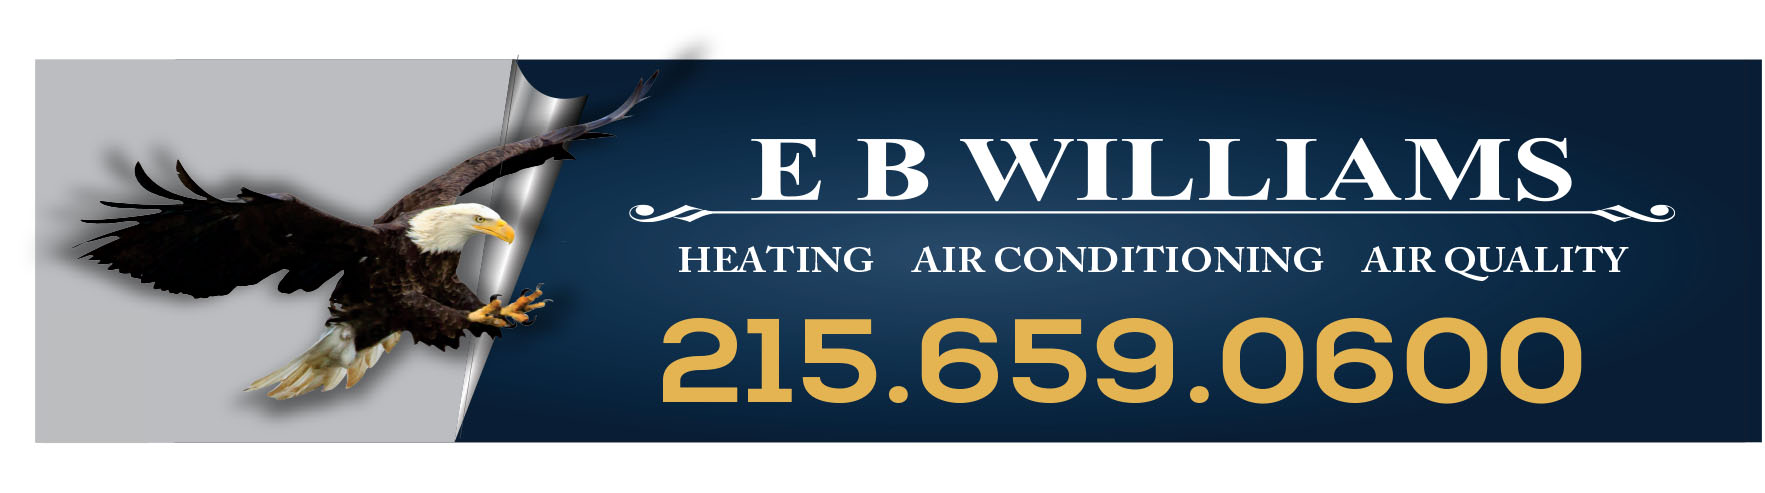 EB Williams HVAC